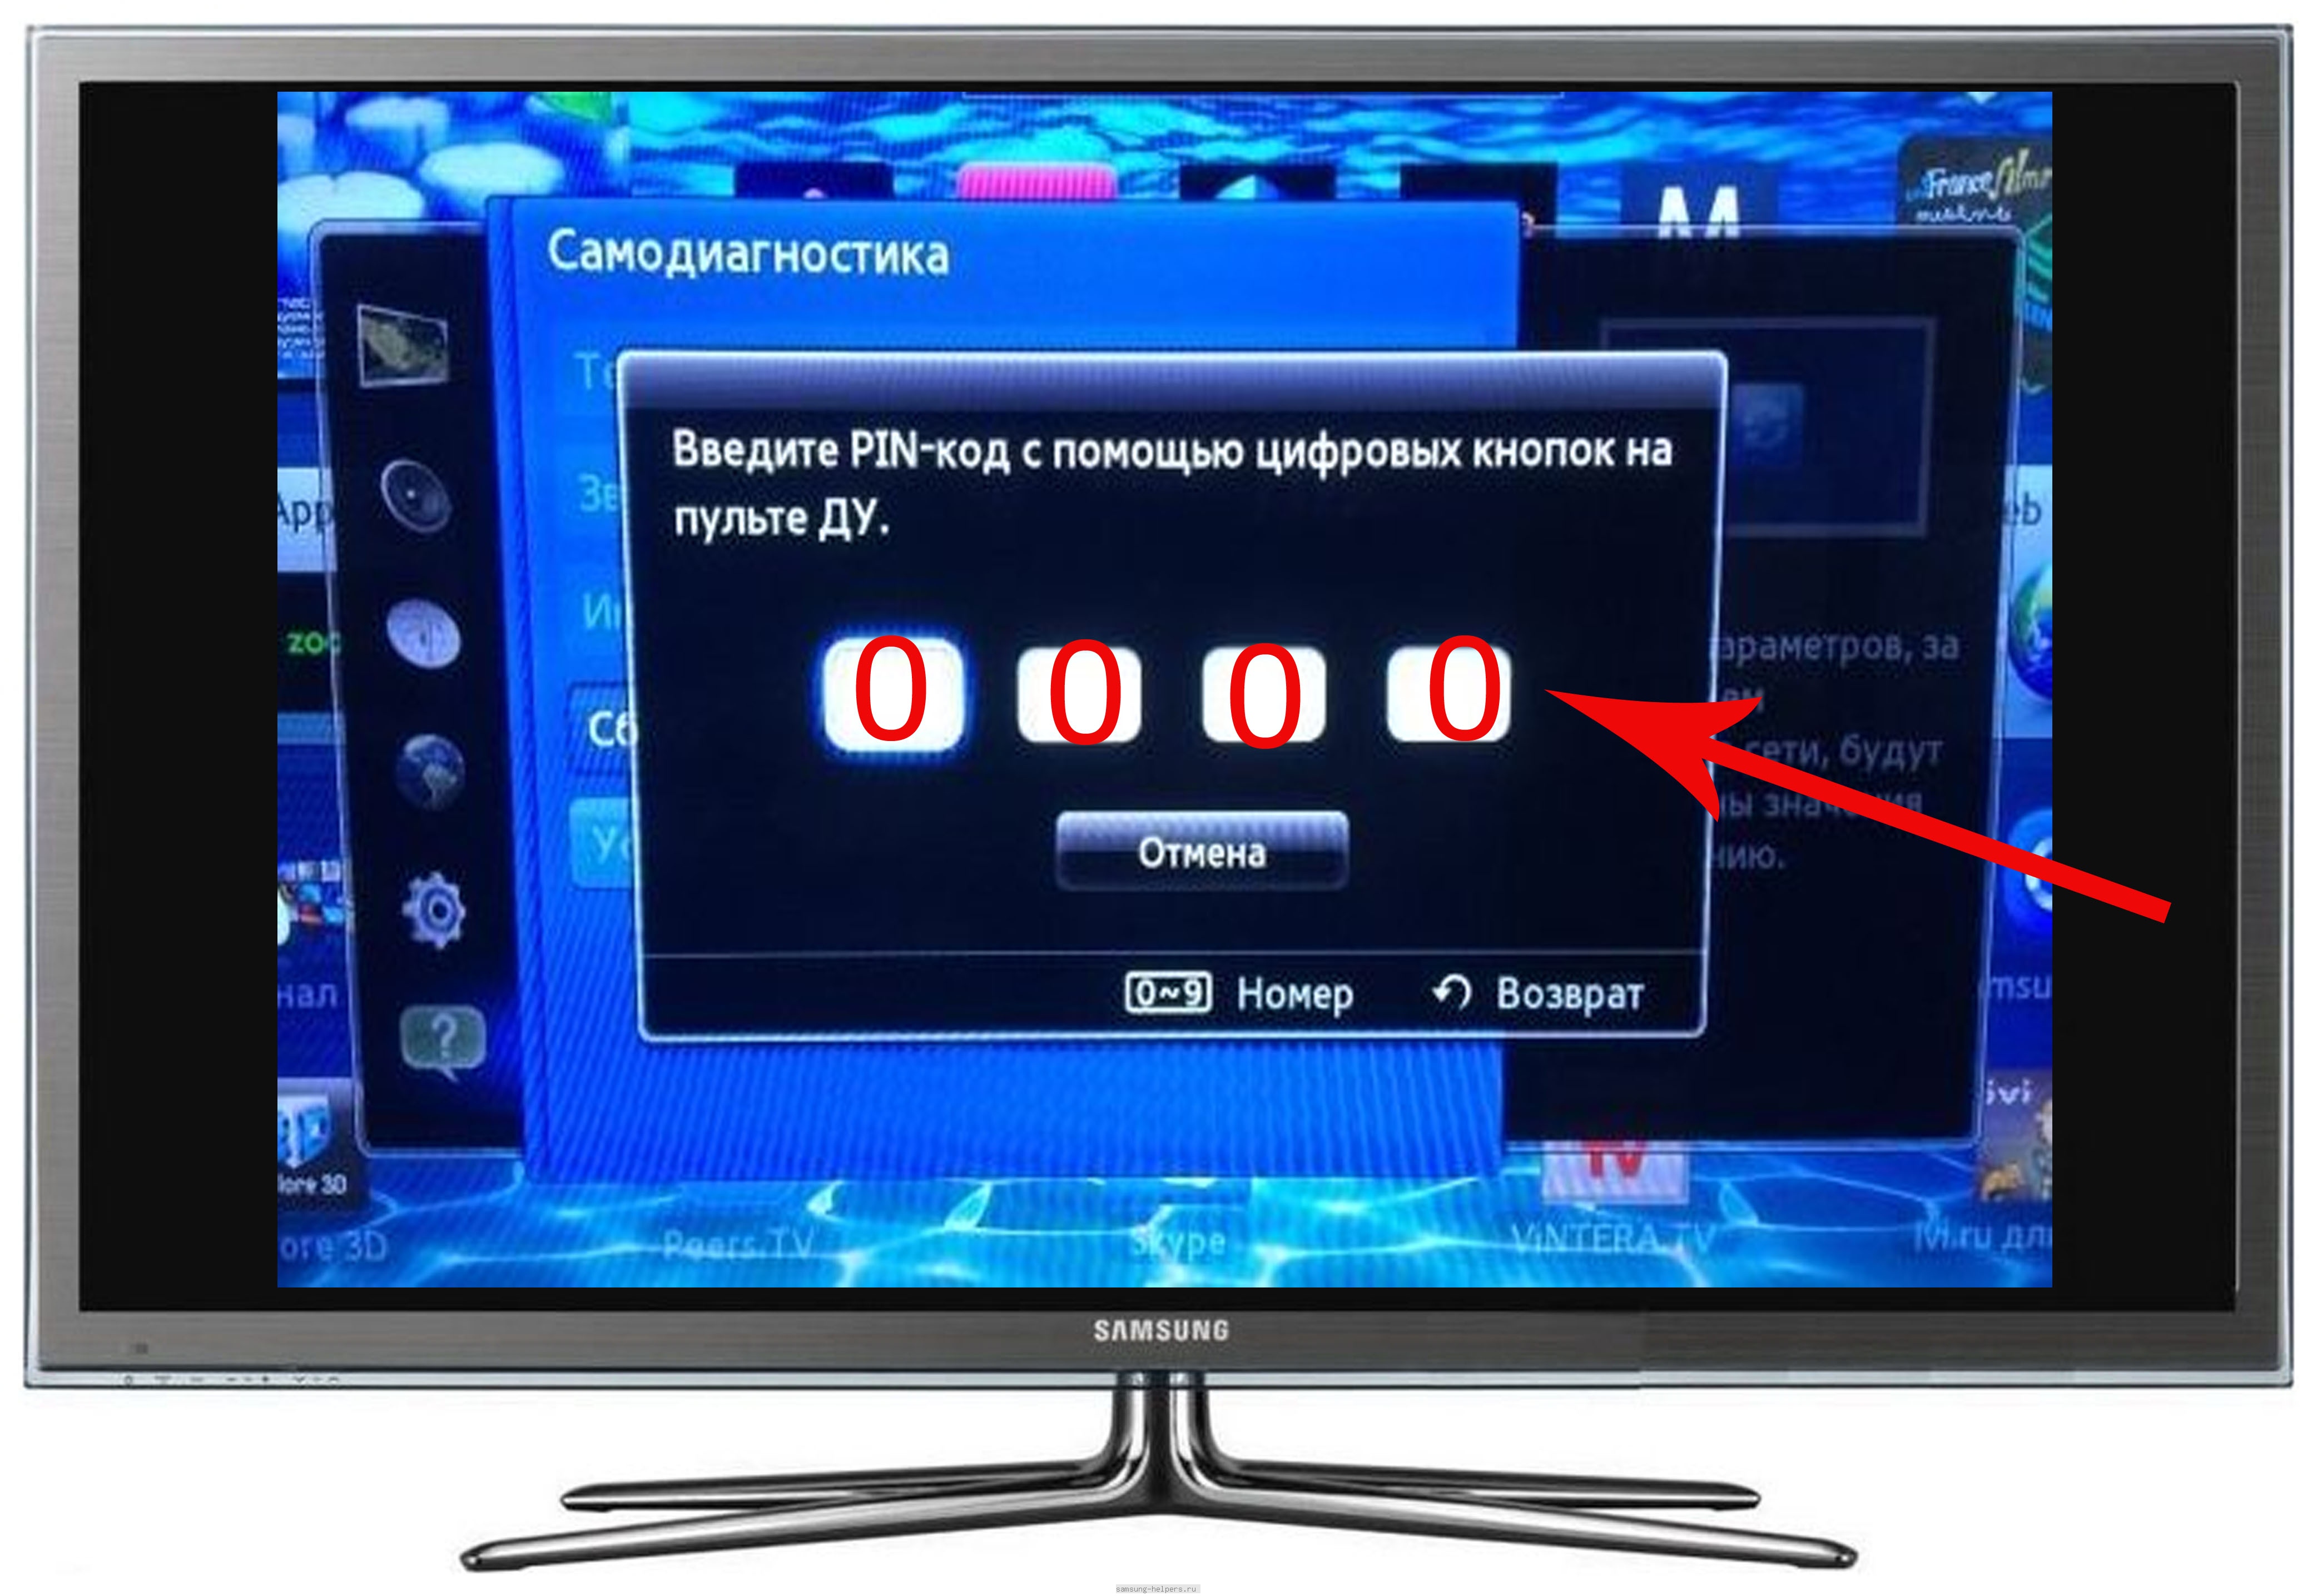 Телевизор отключить пин. Код для смарт ТВ самсунг телевизора Samsung. Пин код телевизора Samsung Smart TV. Разблокировка телевизора. Пин код на телевизоре самсунг.